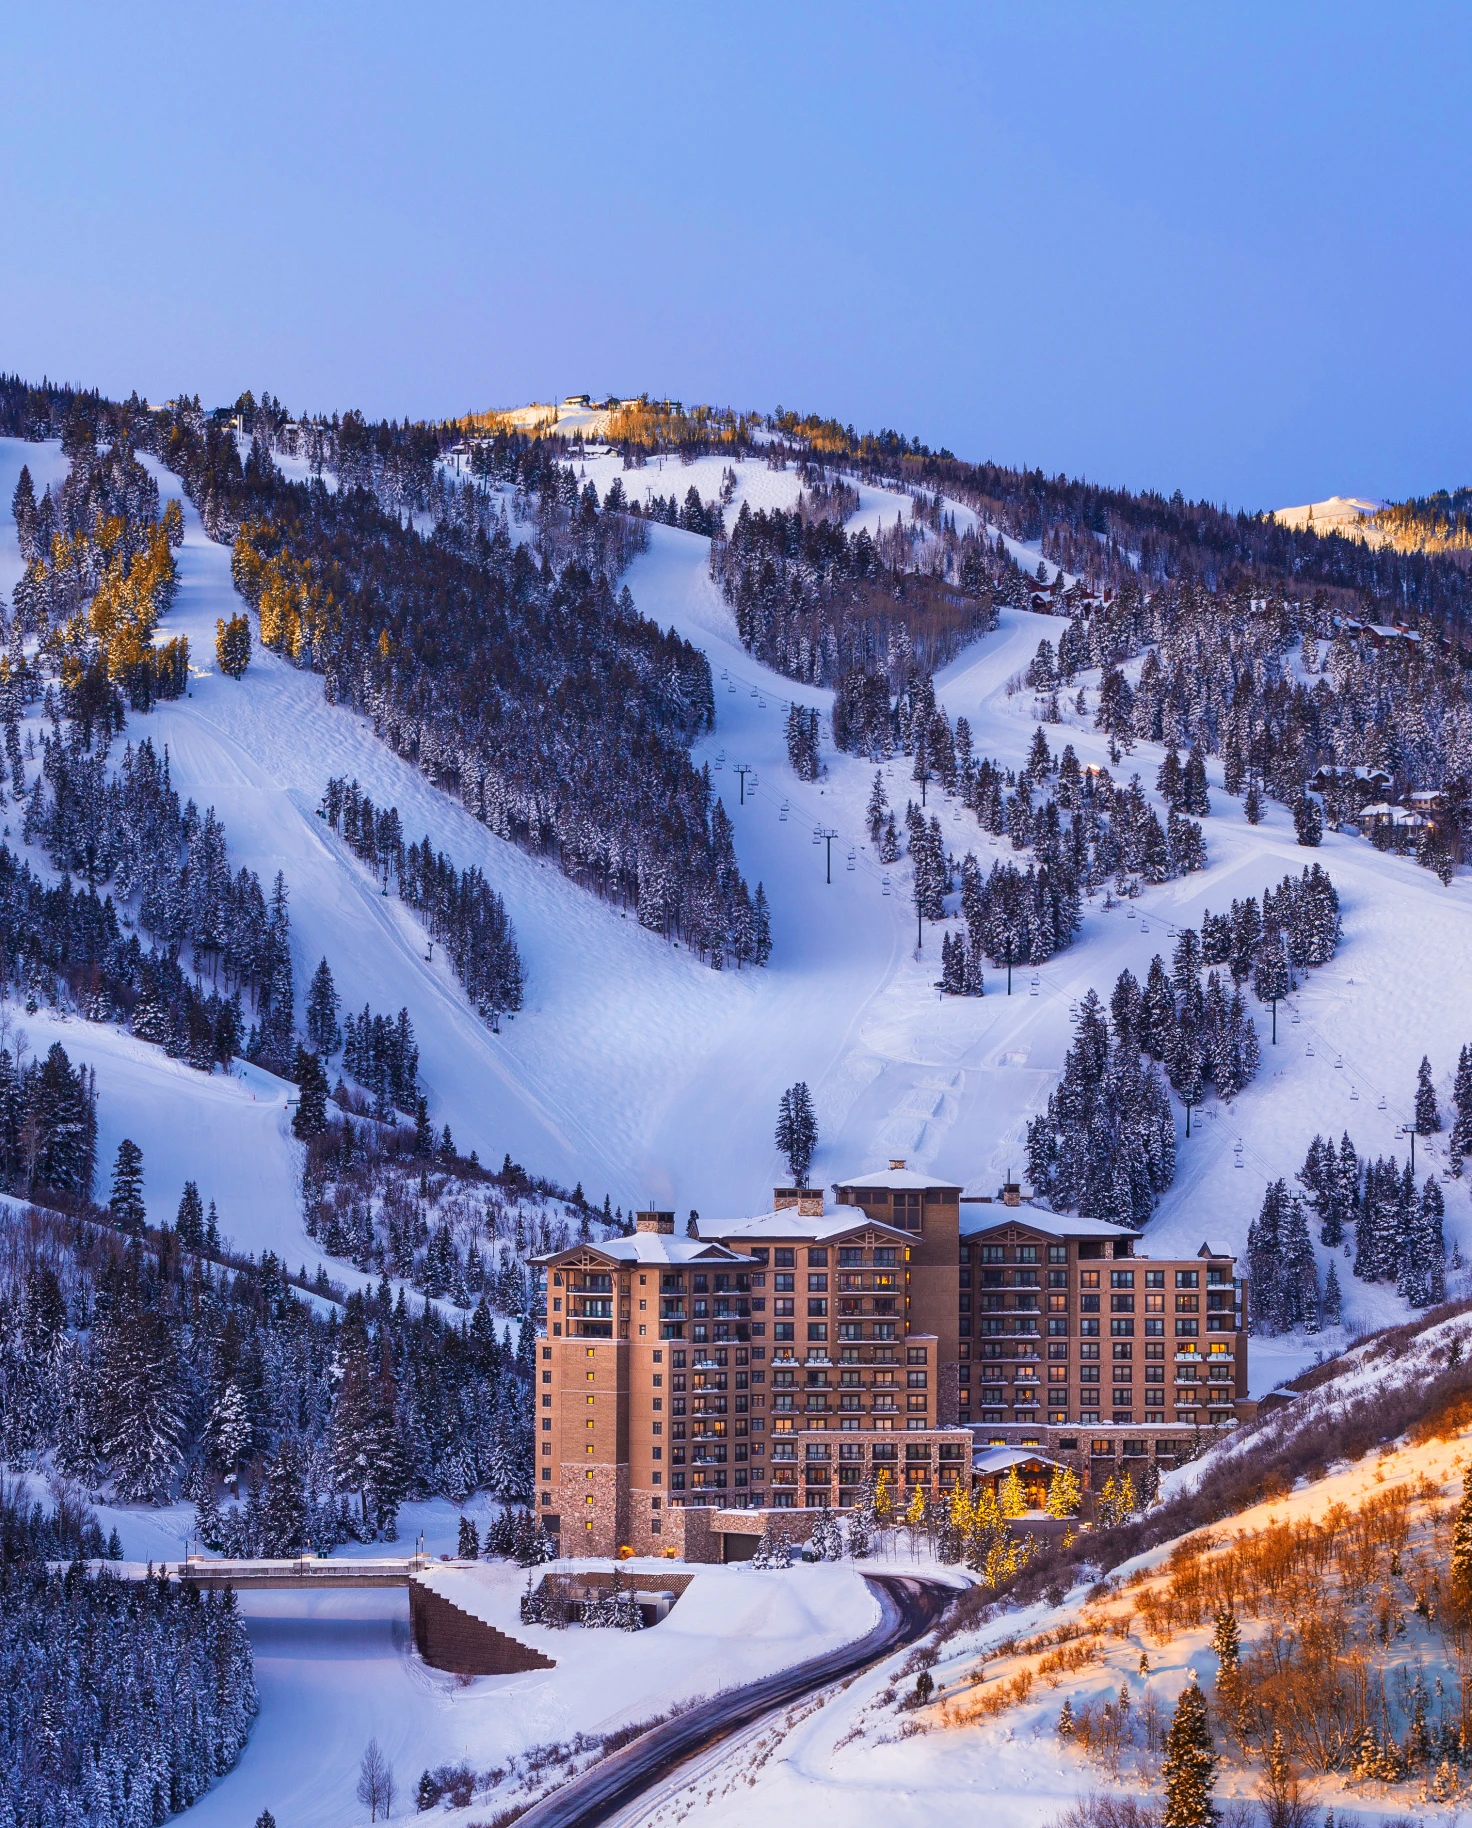 lodge next to snowy mountain with ski slopes